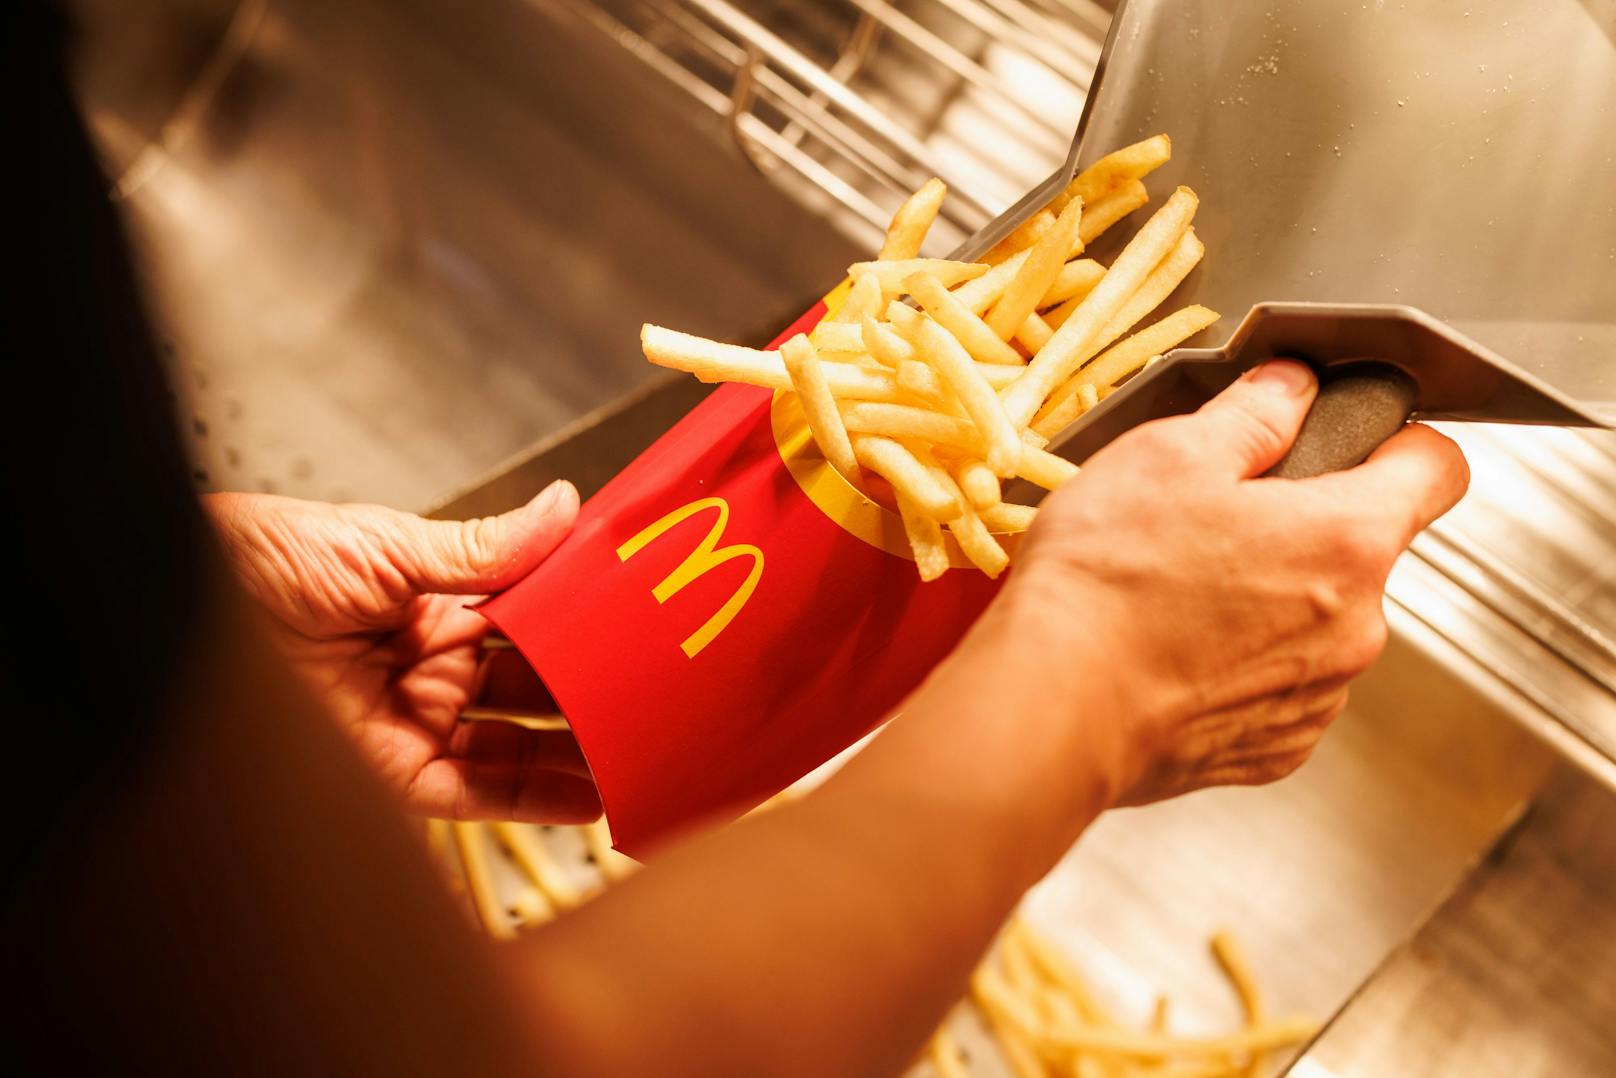 Ein McDonald's-Mitarbeiter beim Abfüllen einer Portion Pommes frites. (Symbolbild)